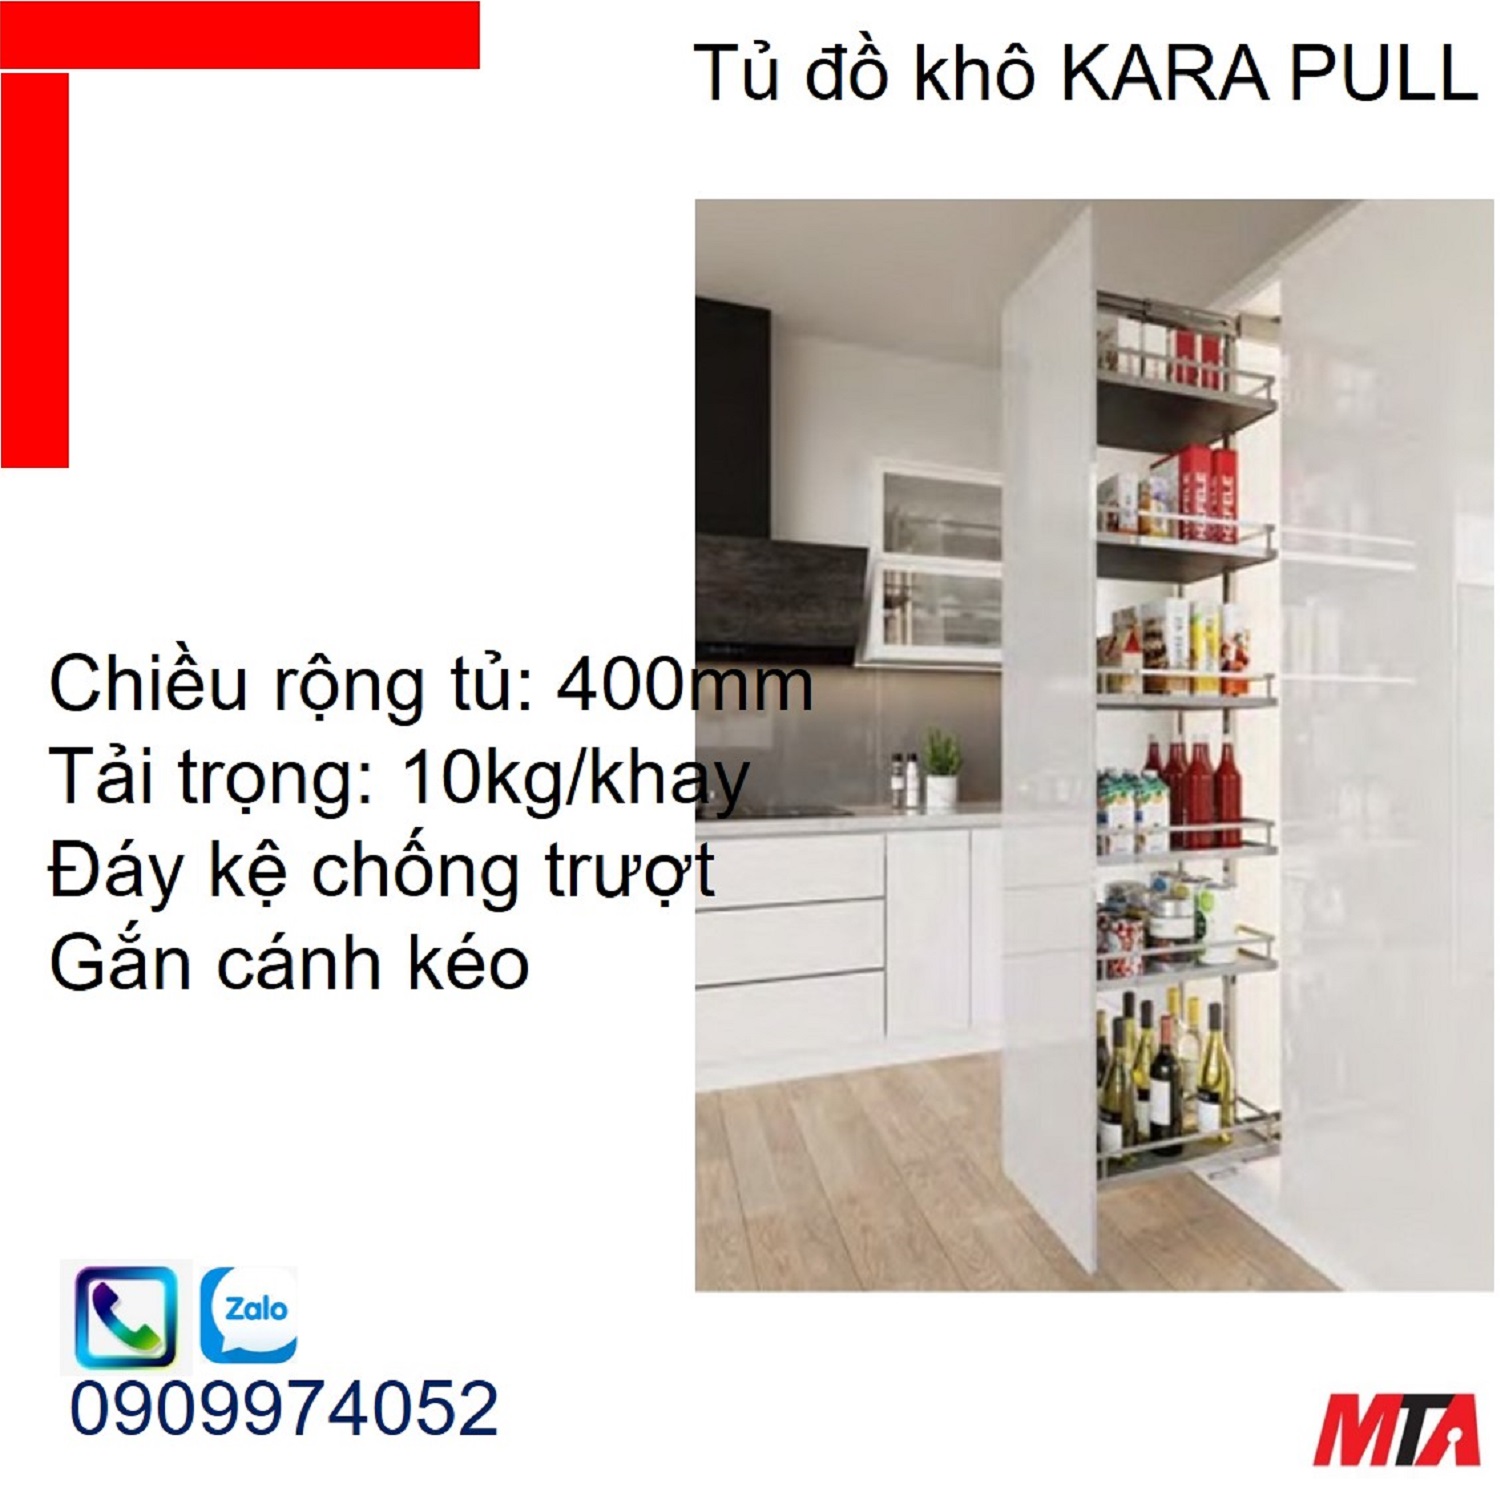 Phụ kiện tủ bếp KOSMO KARA PULL 595.80.803 tủ rộng 400mm